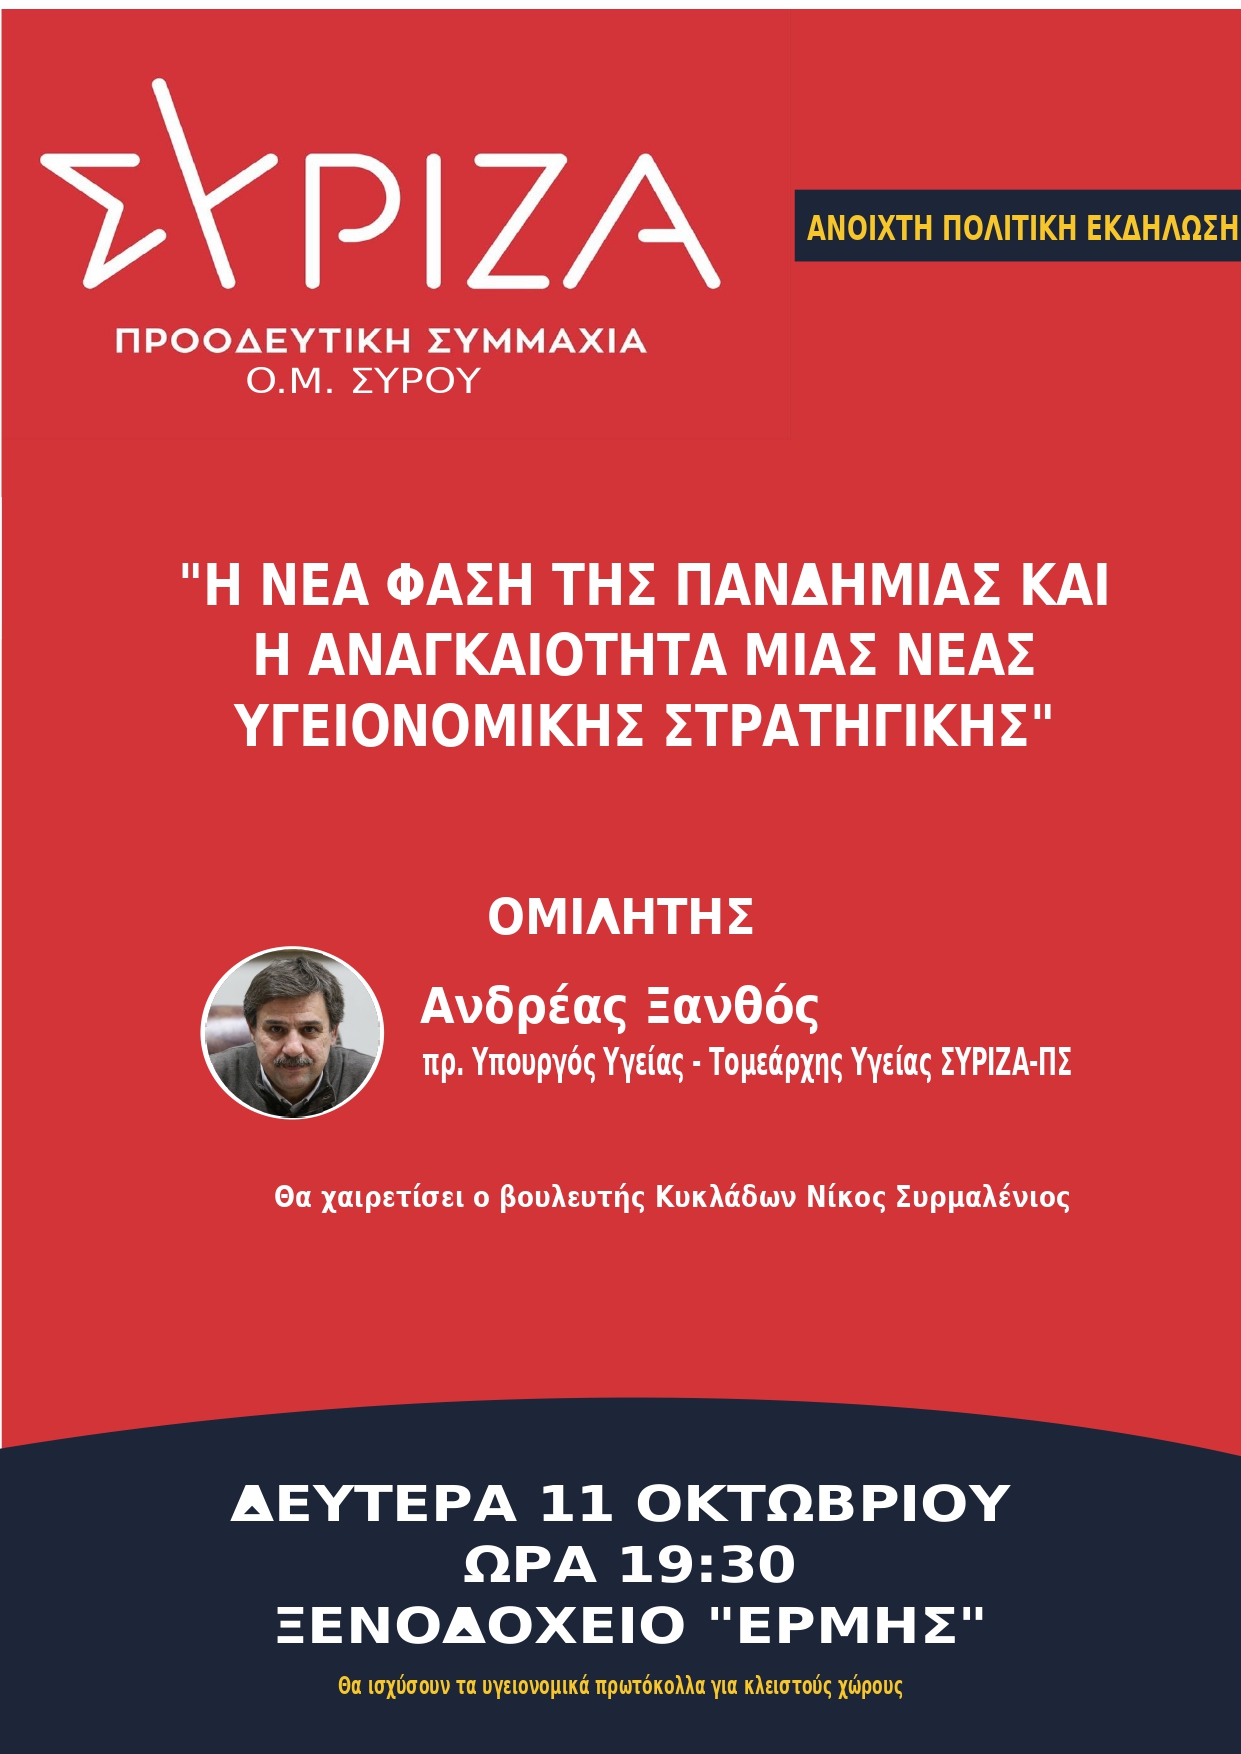 Ανοιχτή πολιτική εκδήλωση της OM Σύρου του ΣΥΡΙΖΑ Προοδευτική Συμμαχία